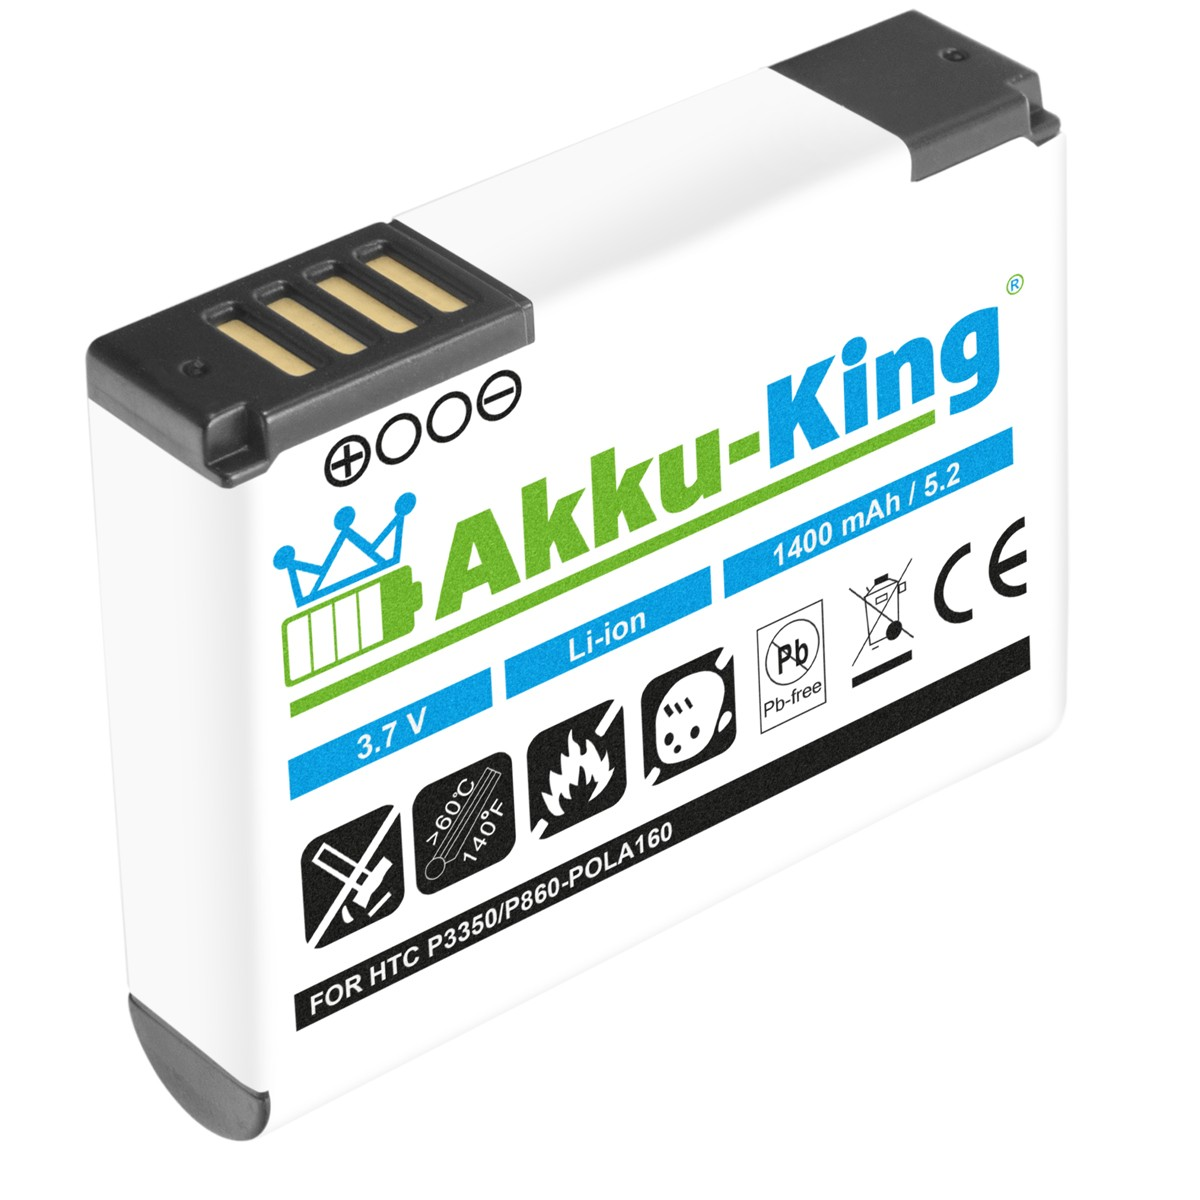 Handy-Akku, 1400mAh Volt, mit Akku POLA160 AKKU-KING HTC 3.7 Li-Ion kompatibel